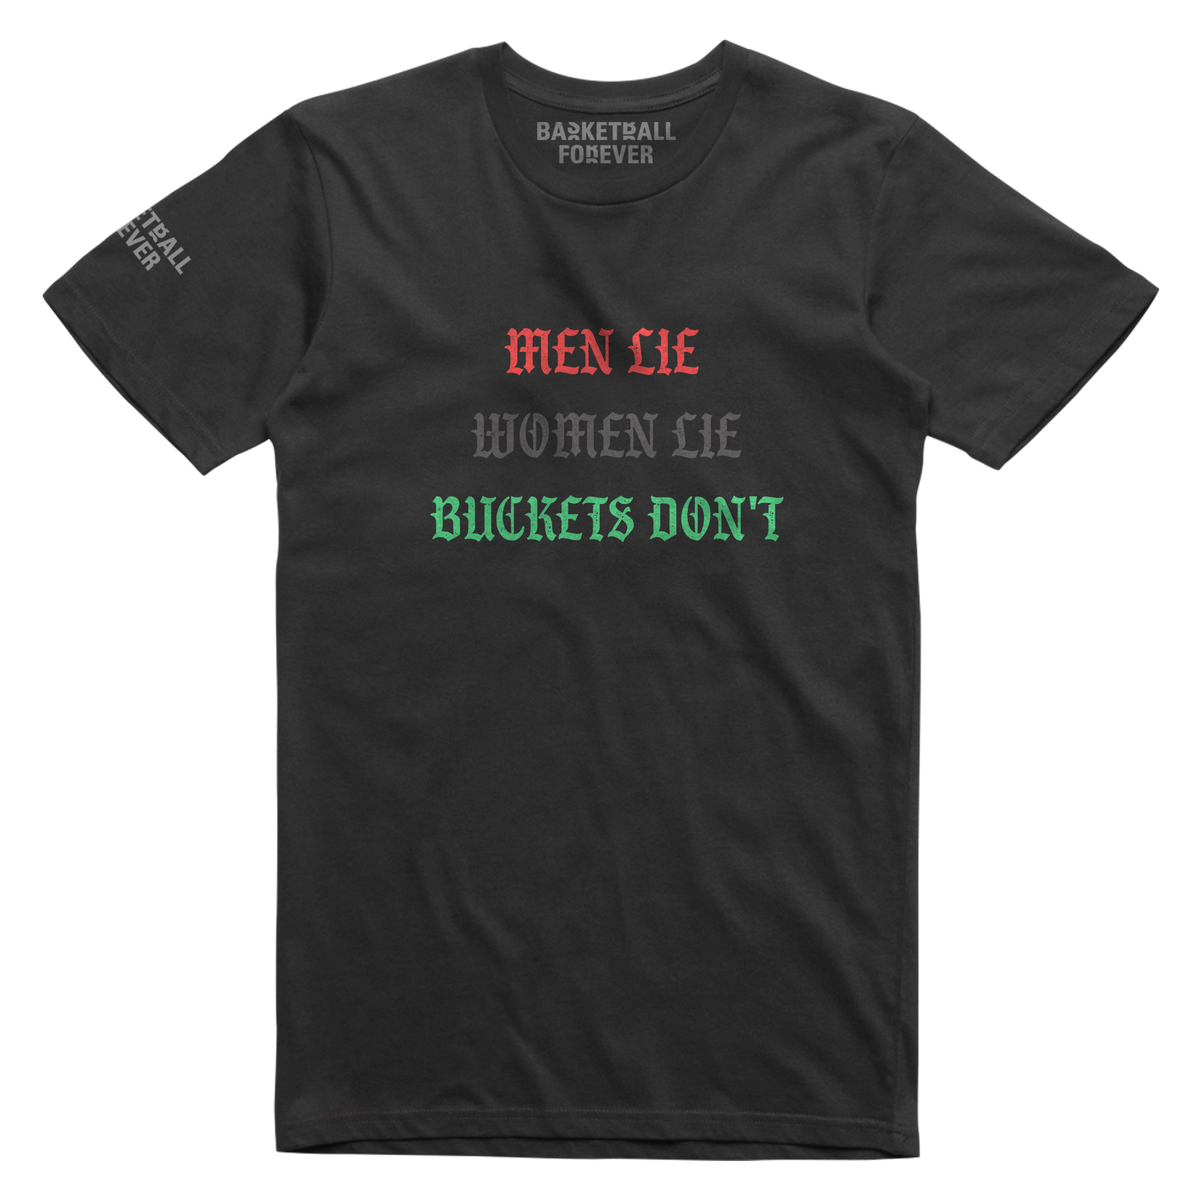 Buckets Dont Lie Shirt – Basketball Forever